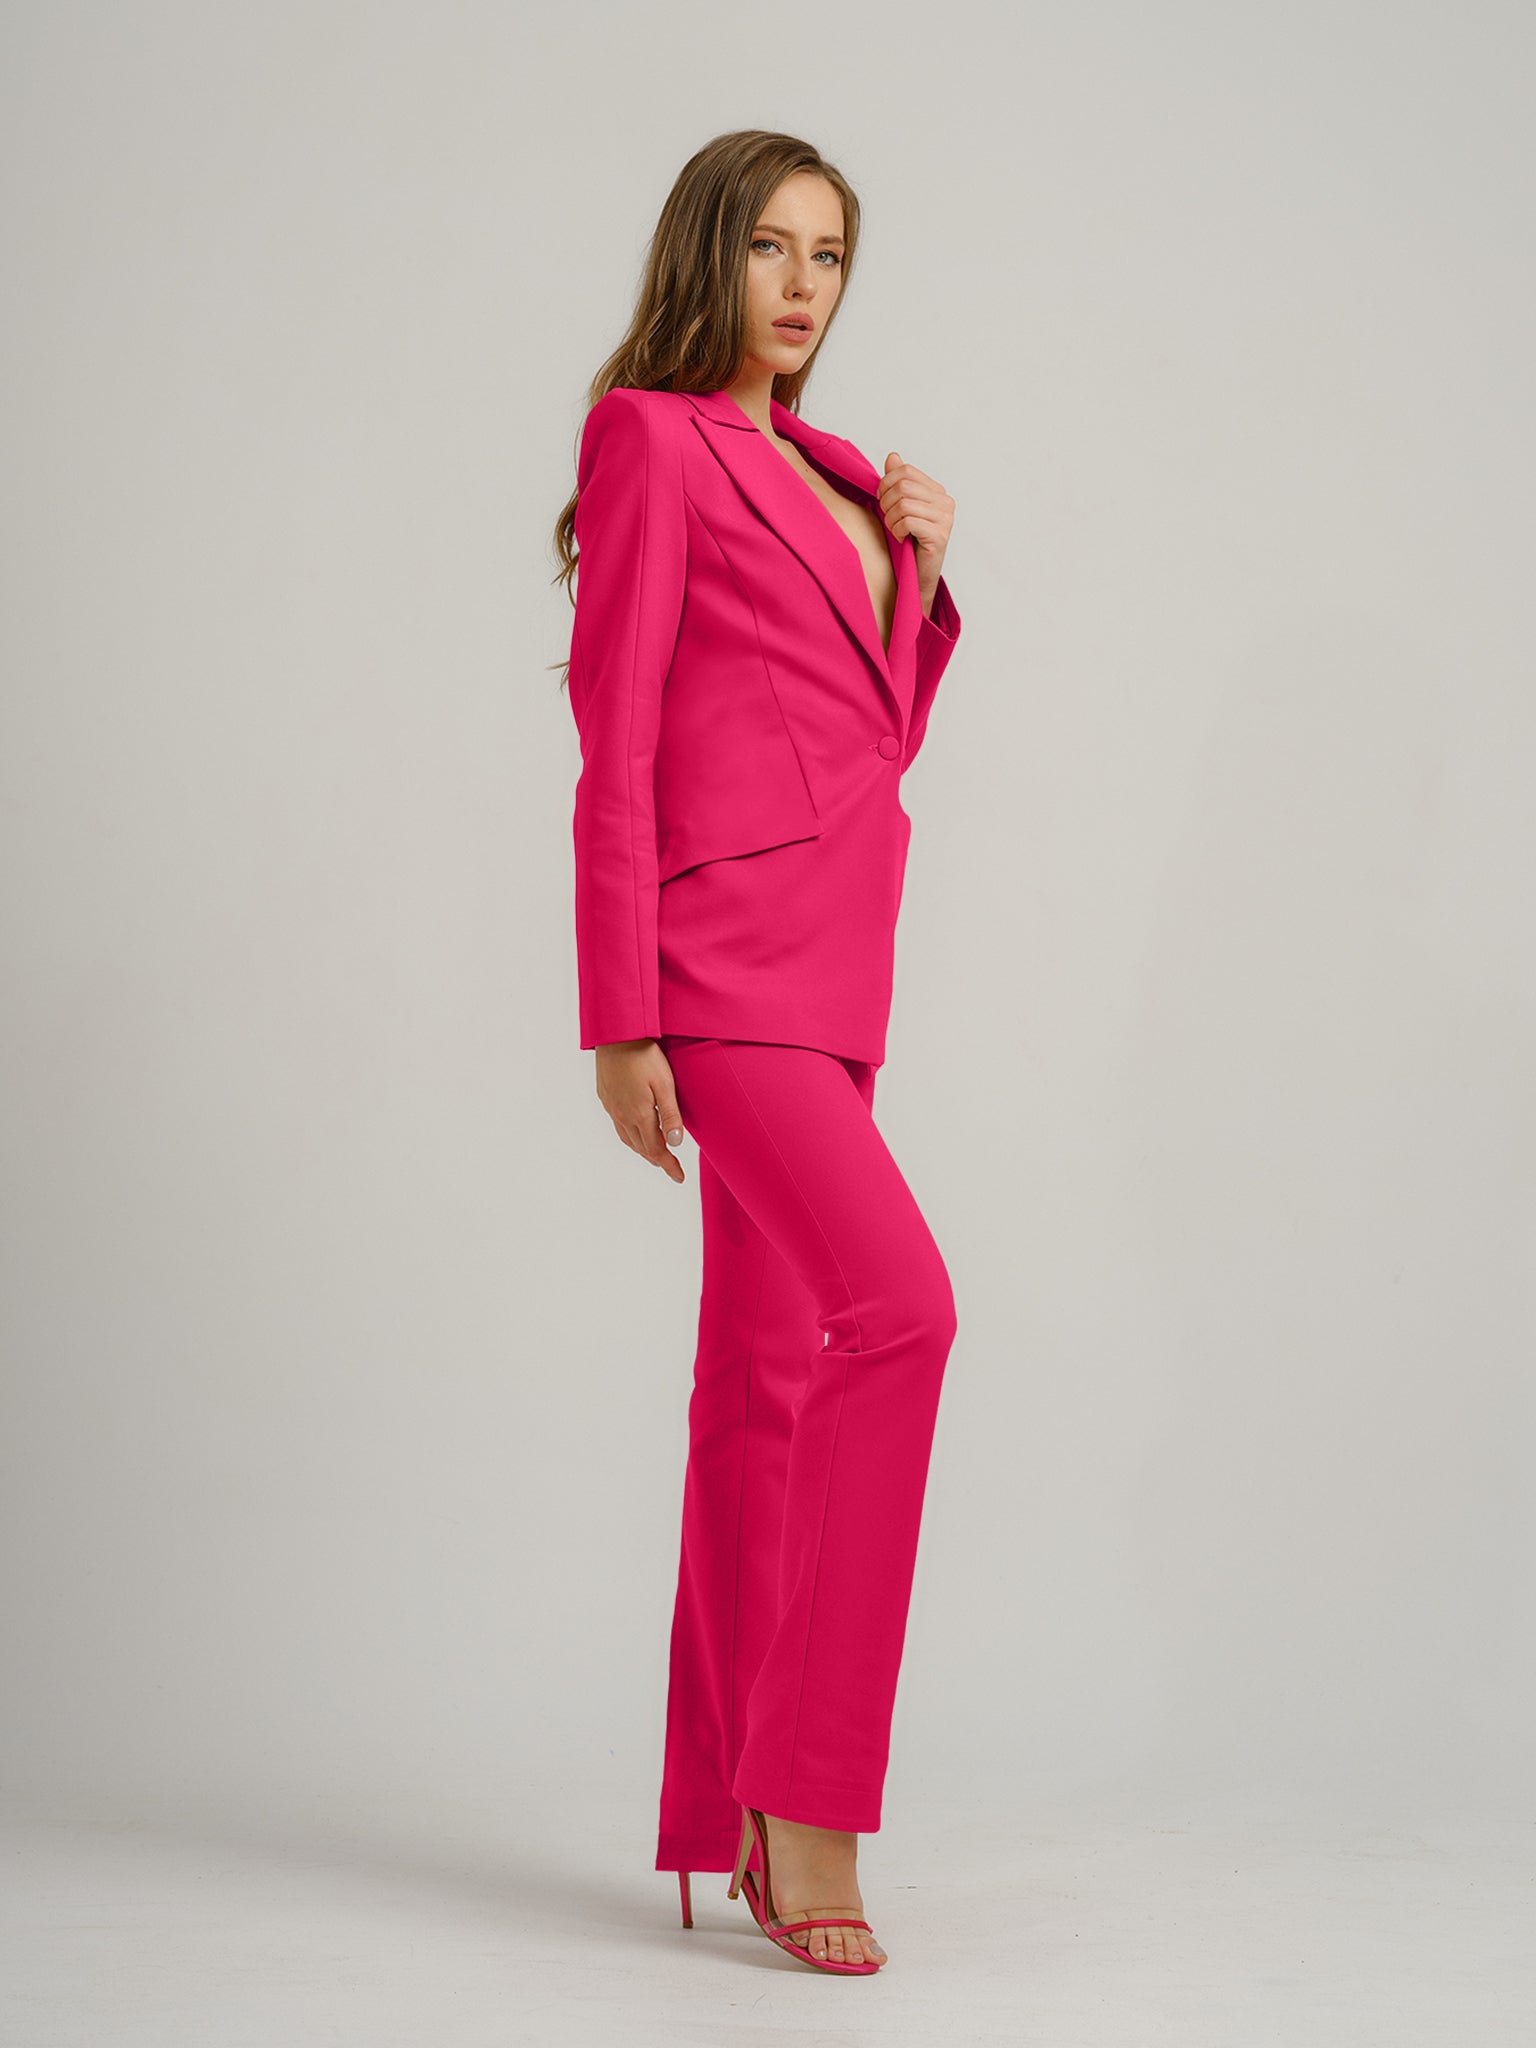 Fantasy Tailored Blazer - Pink by Tia Dorraine Women's Luxury Fashion Designer Clothing Brand